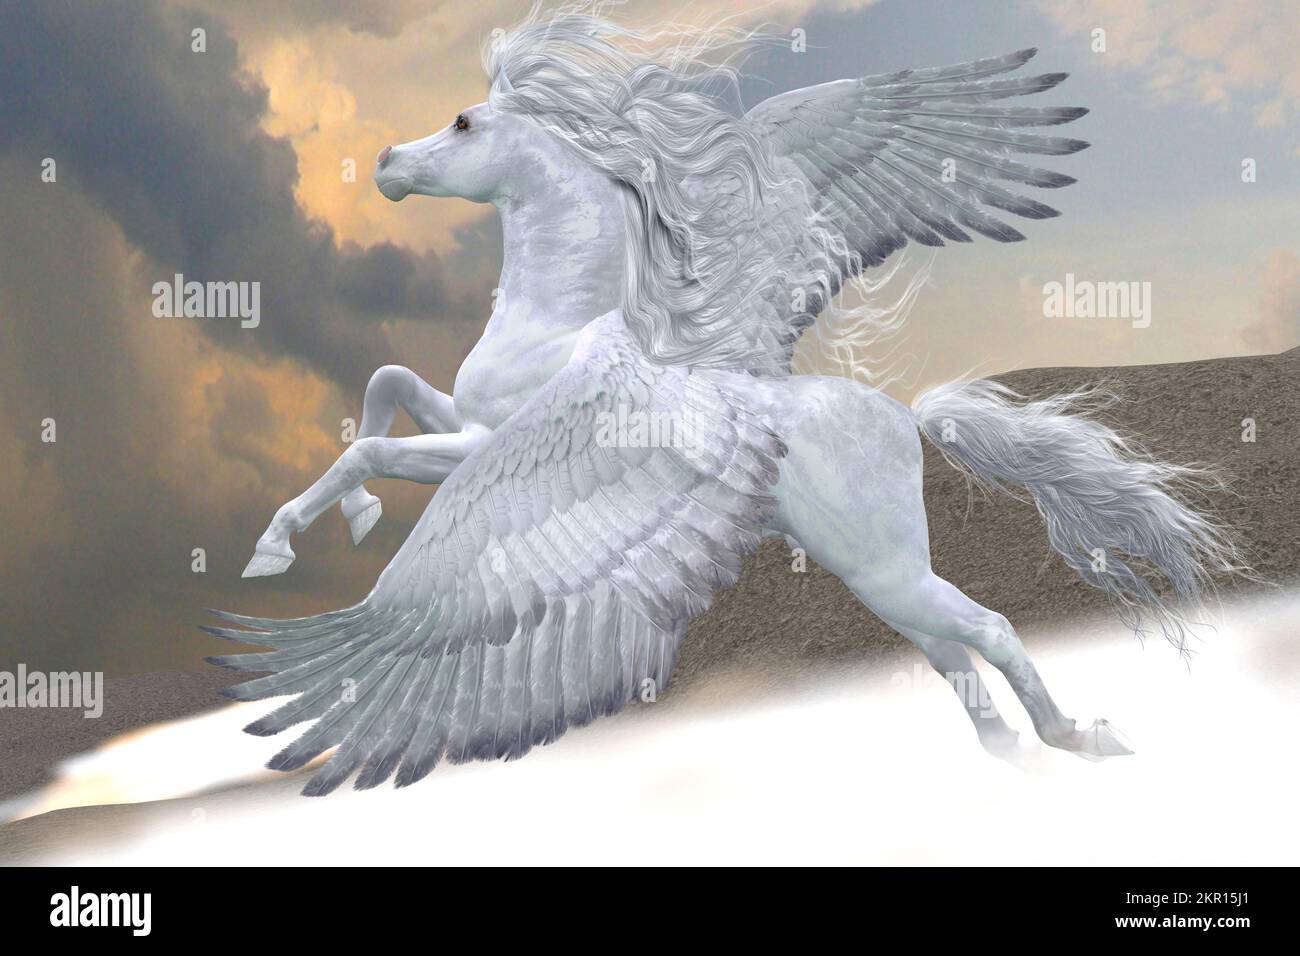 Der wunderschöne weiße Pegasus fliegt durch die Berge und beschlägt den Nebel nach oben in Richtung Himmel. Stockfoto